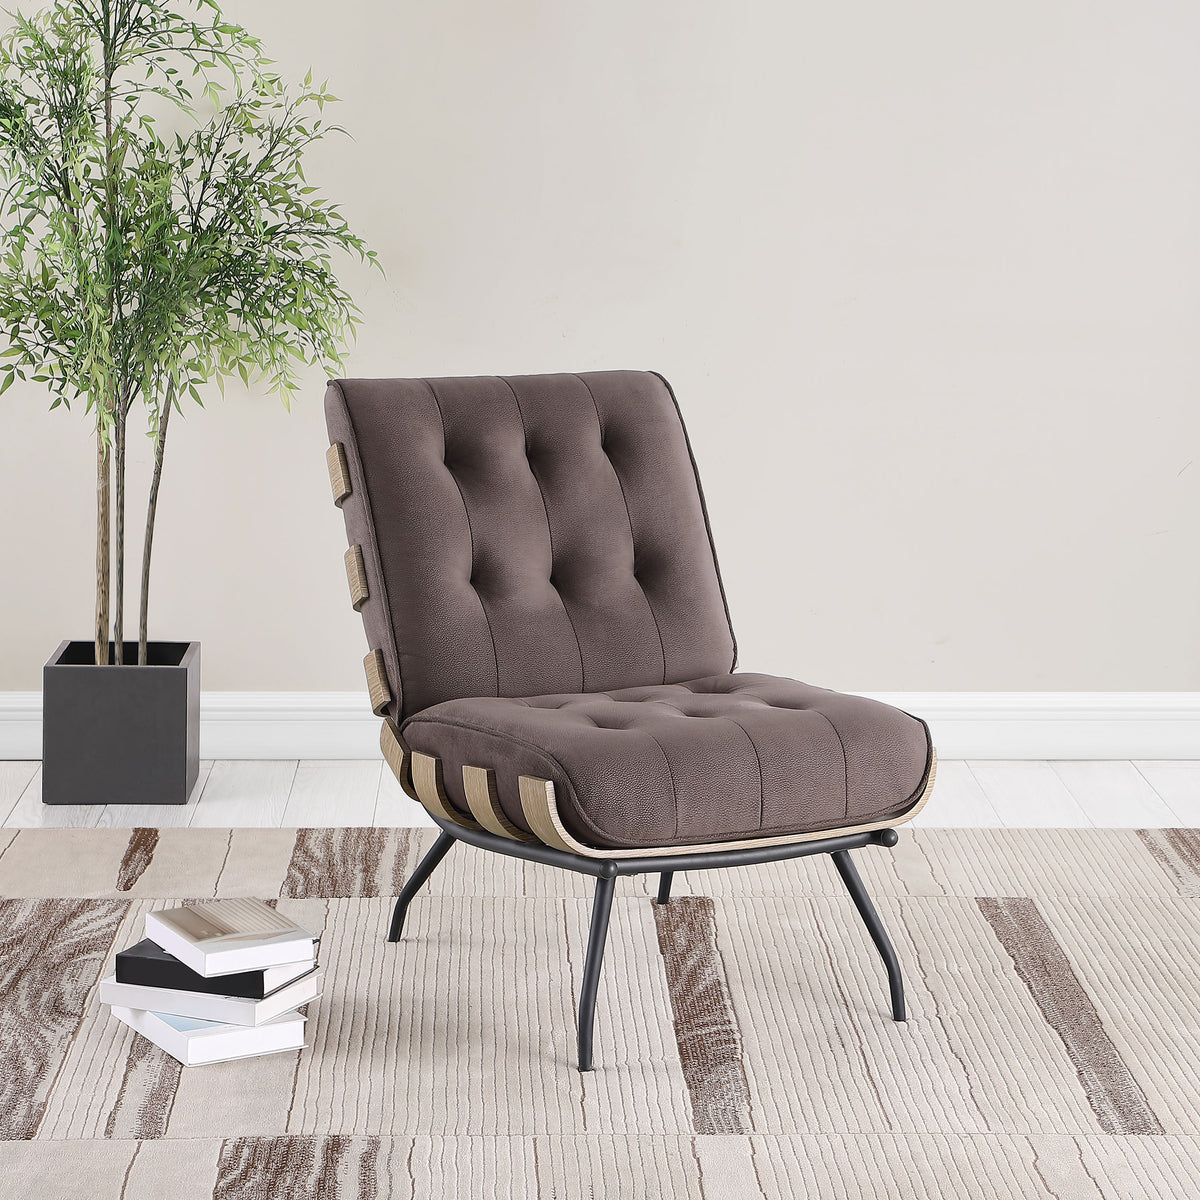 Aloma Armless Tufted Accent Chair Aloma Armless Tufted Accent Chair Half Price Furniture